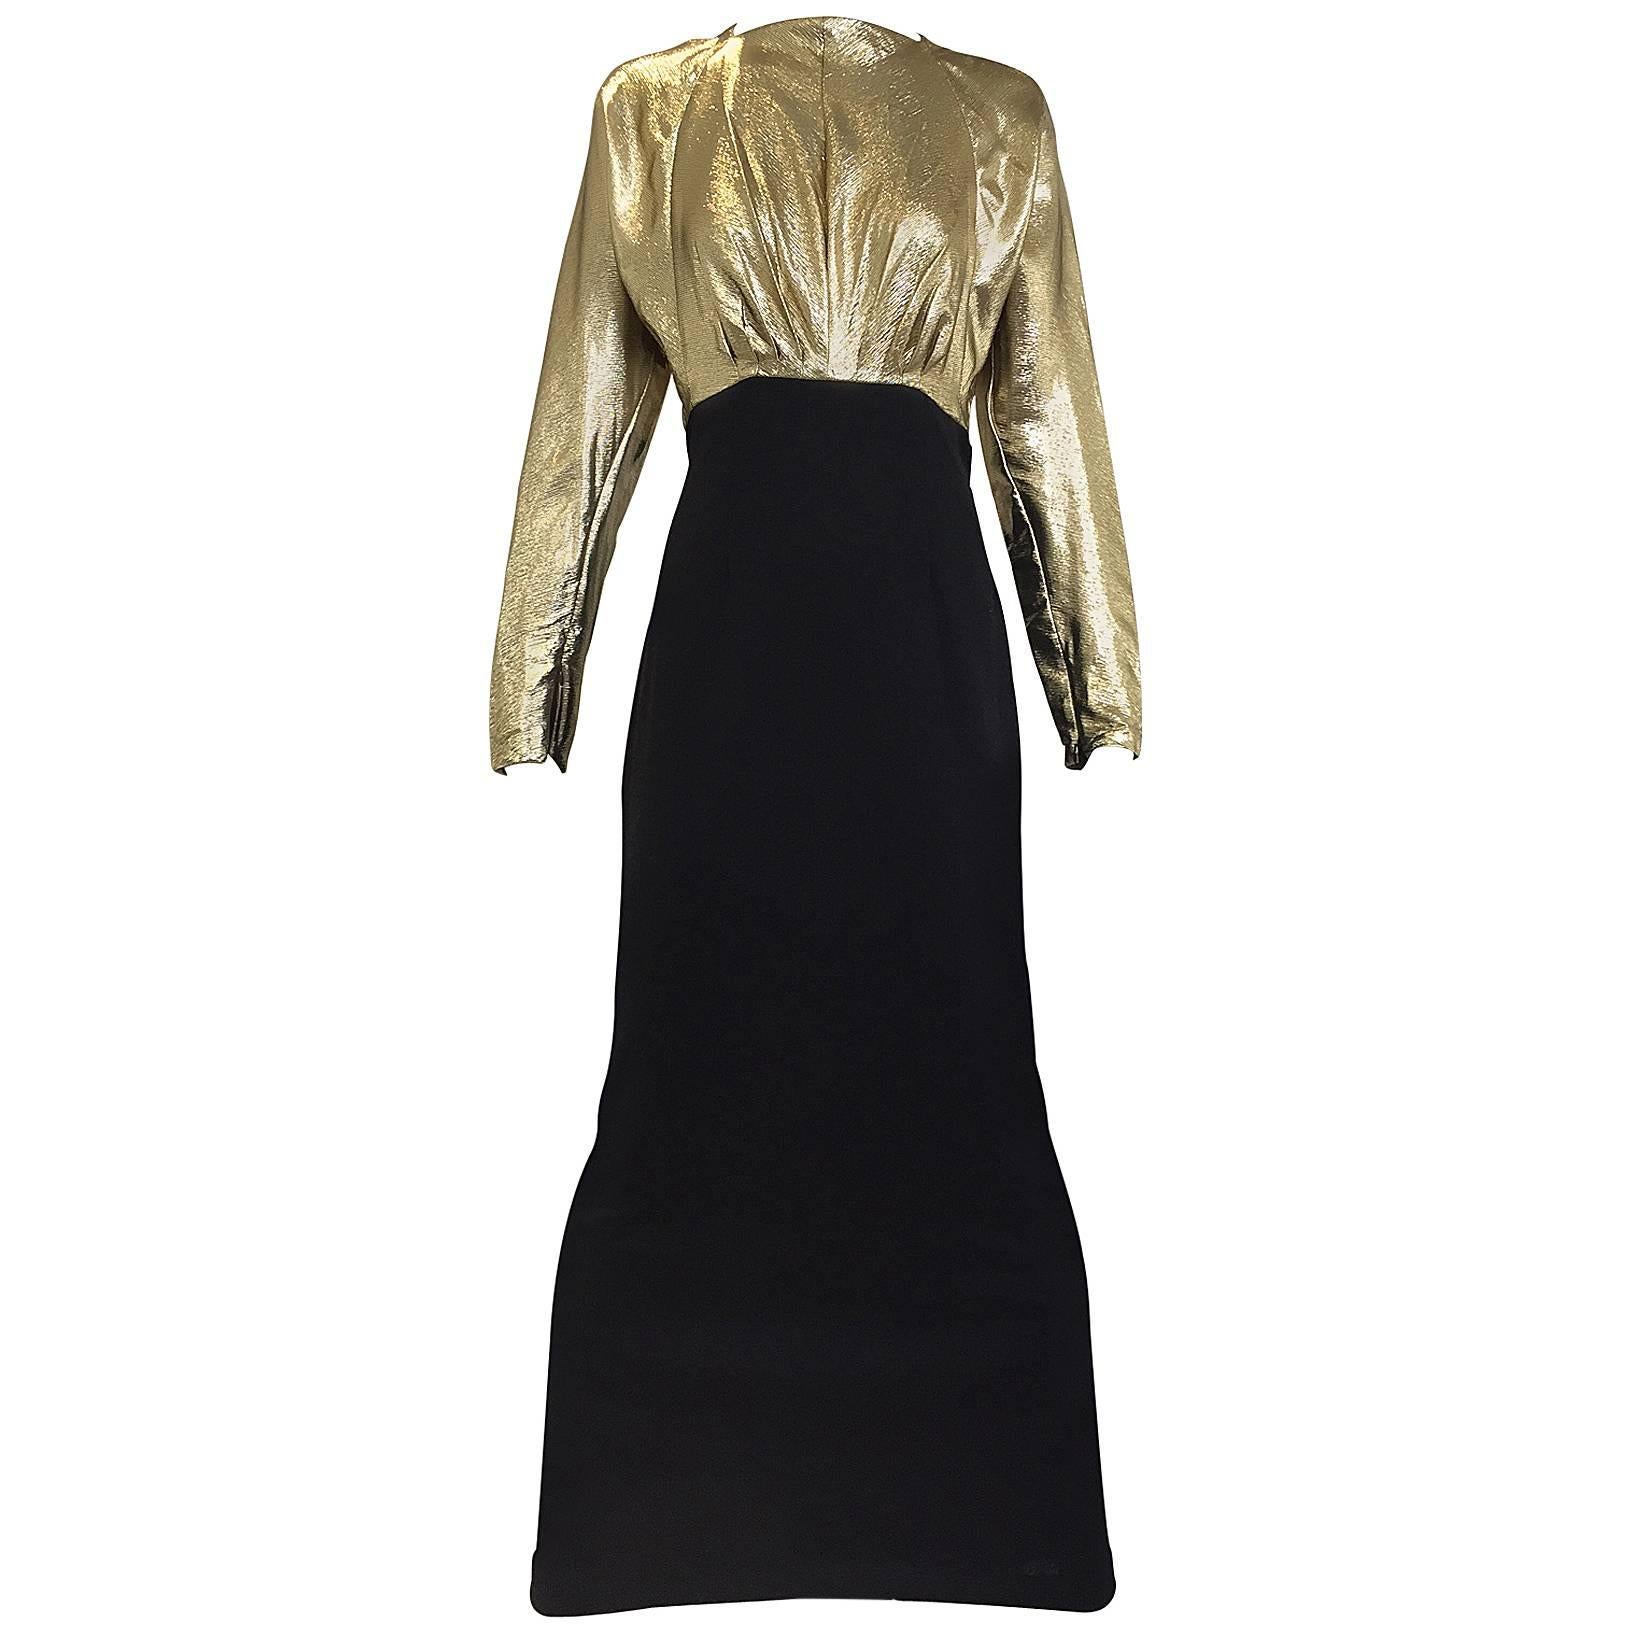 Vintage Geoffrey Beene gold lamé and black jersey wool 80s dress